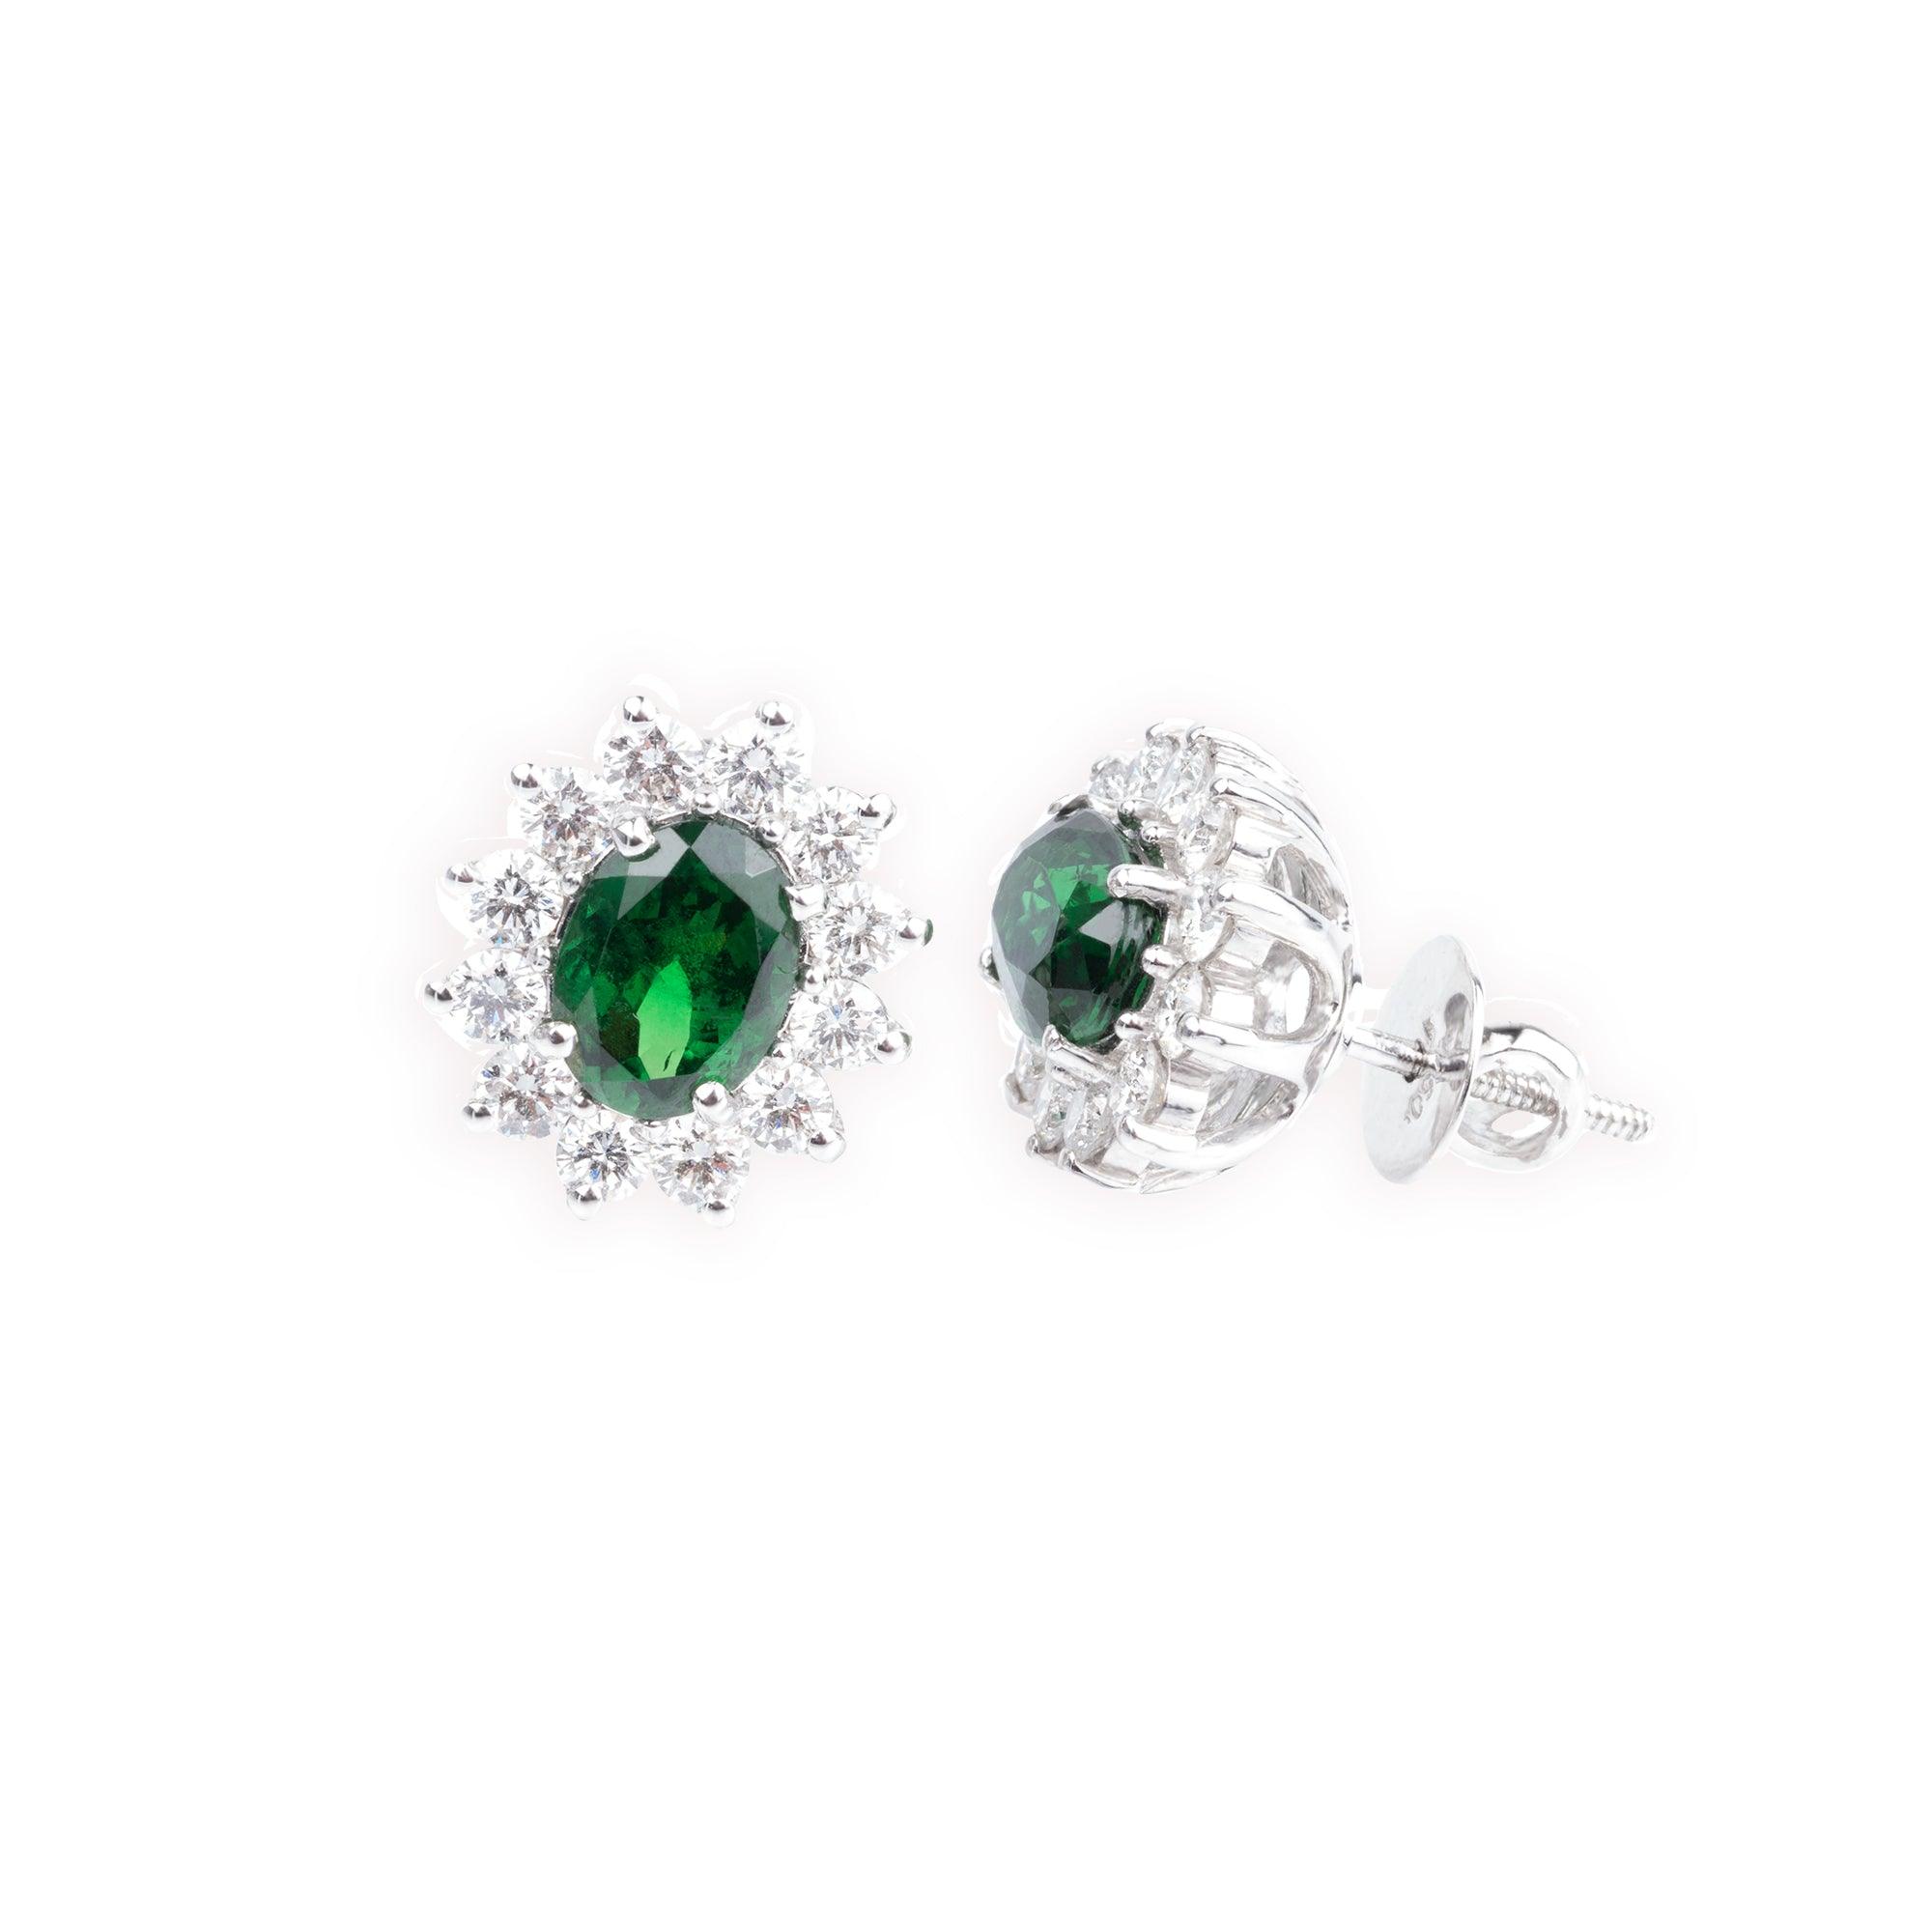 18ct White Gold Diamond & Green Garnet Earrings E-3105